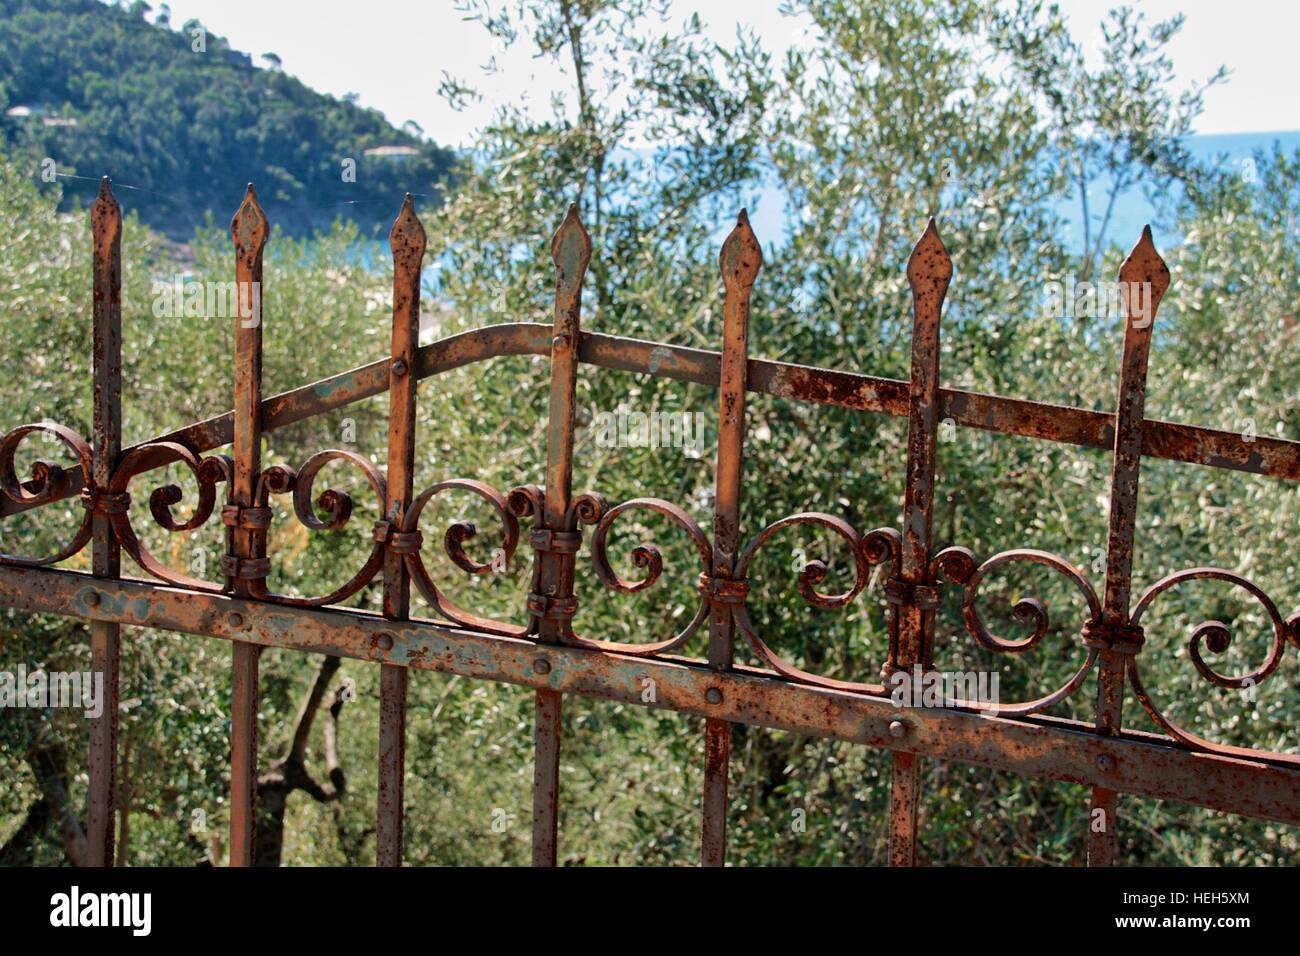 Clôture de fer rouillée, trouvée le long d'une route dans la région de Levanto, Italie. Banque D'Images